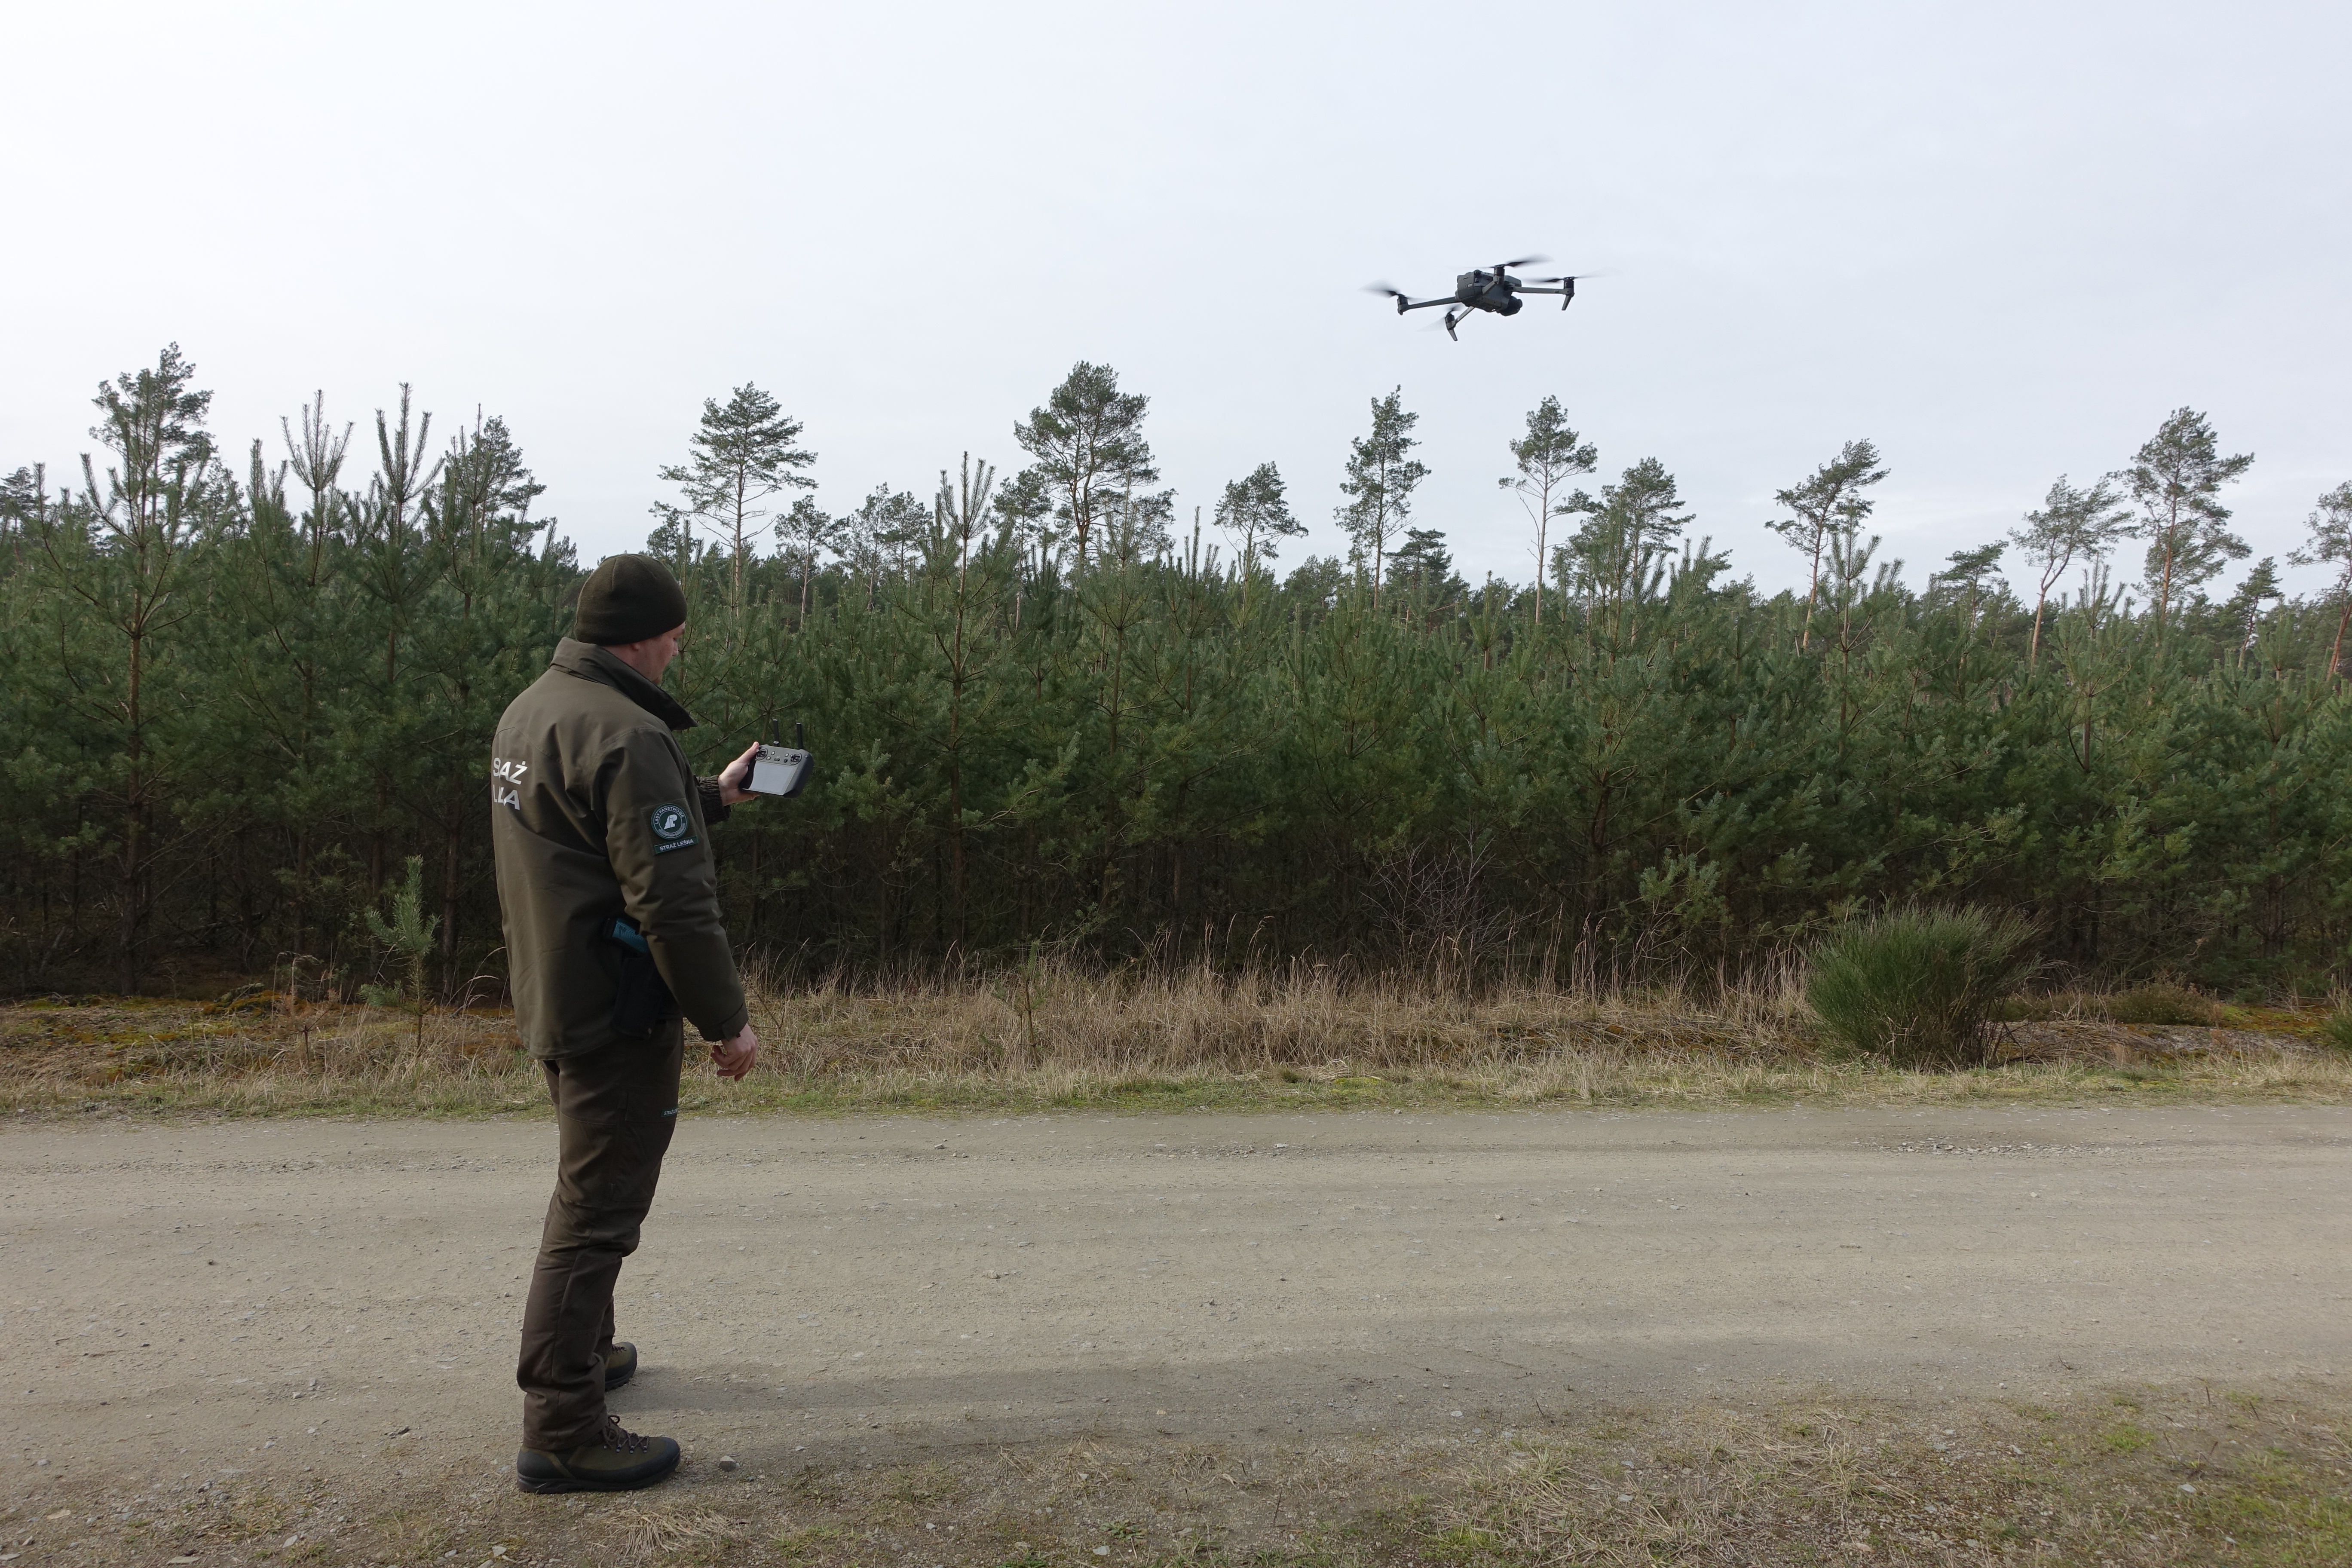 Zdjęcie przedstawia strażnika leśnego w mundurze sterującego dronem, który unosi się ponad lasem. Fot. Archiwum Nadleśnictwa Turek